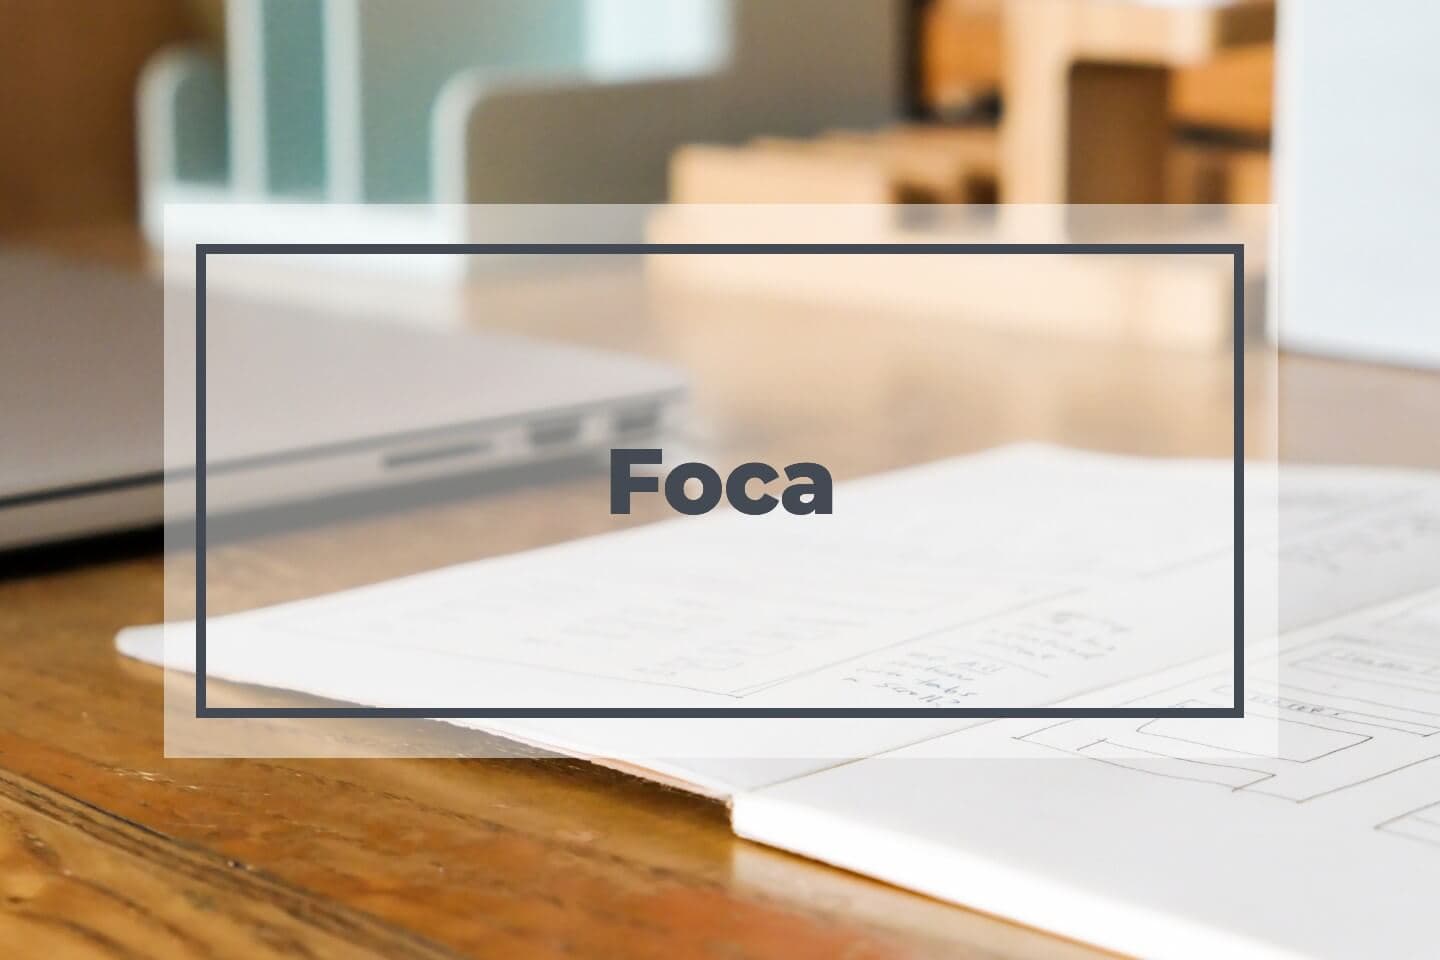 Foca stock images